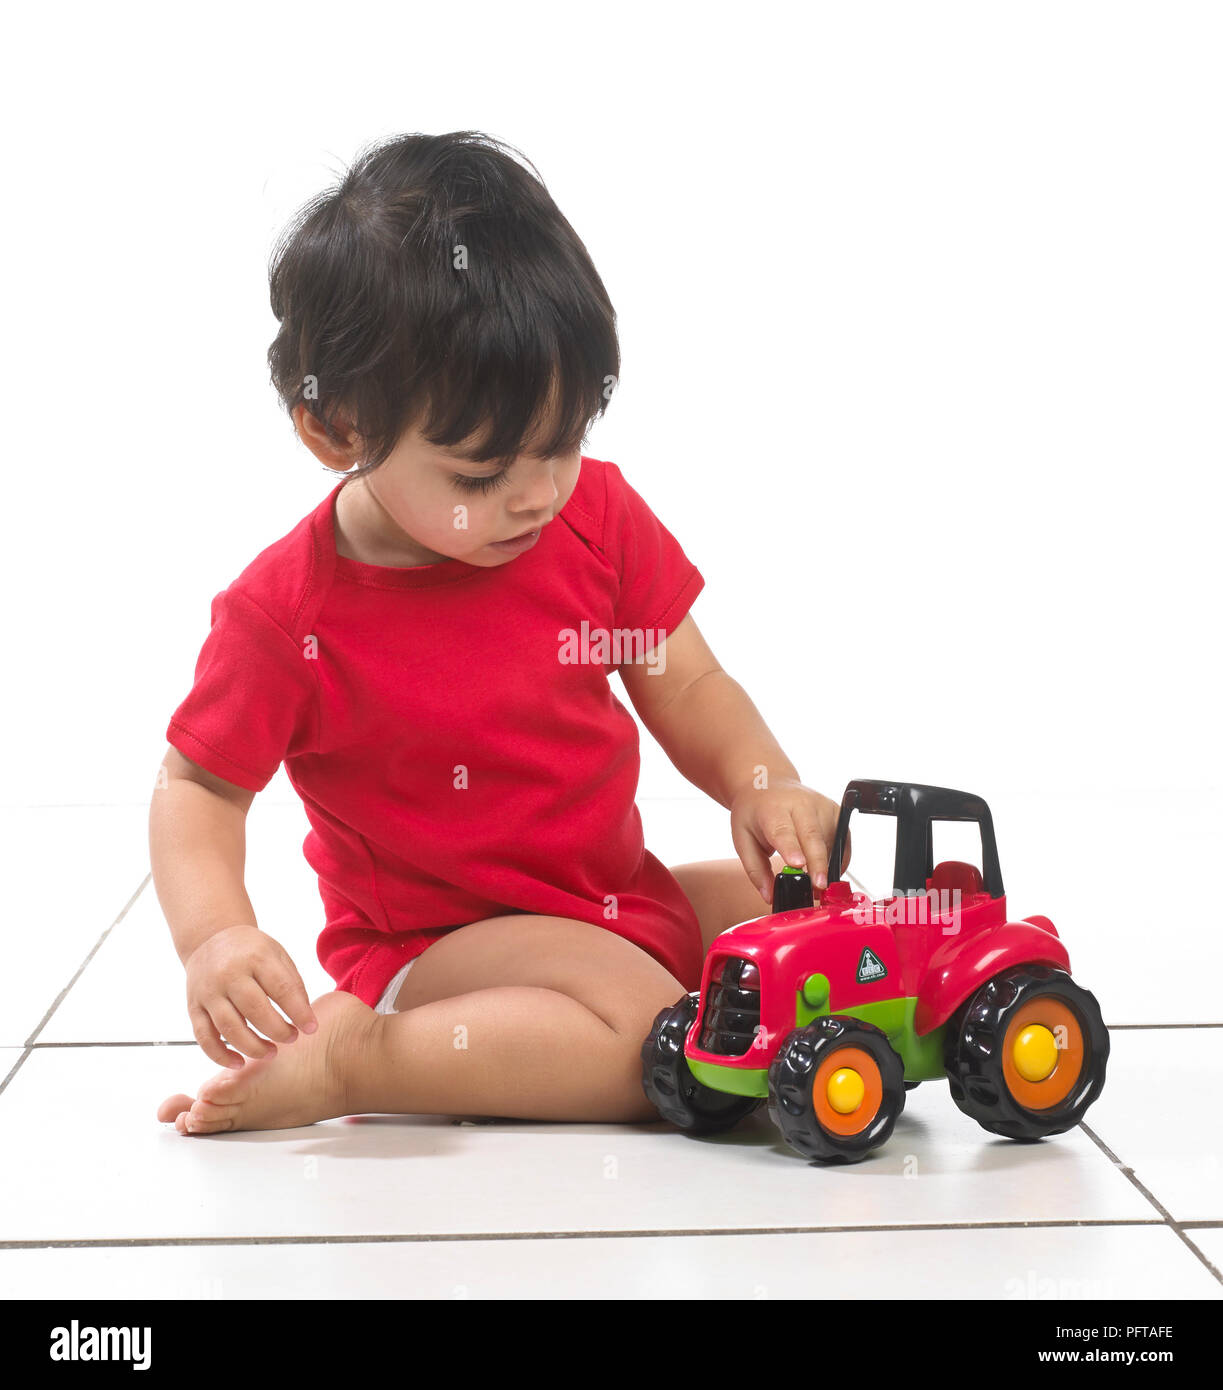 Bébé garçon (16 mois) assis avec tracteur jouet Banque D'Images